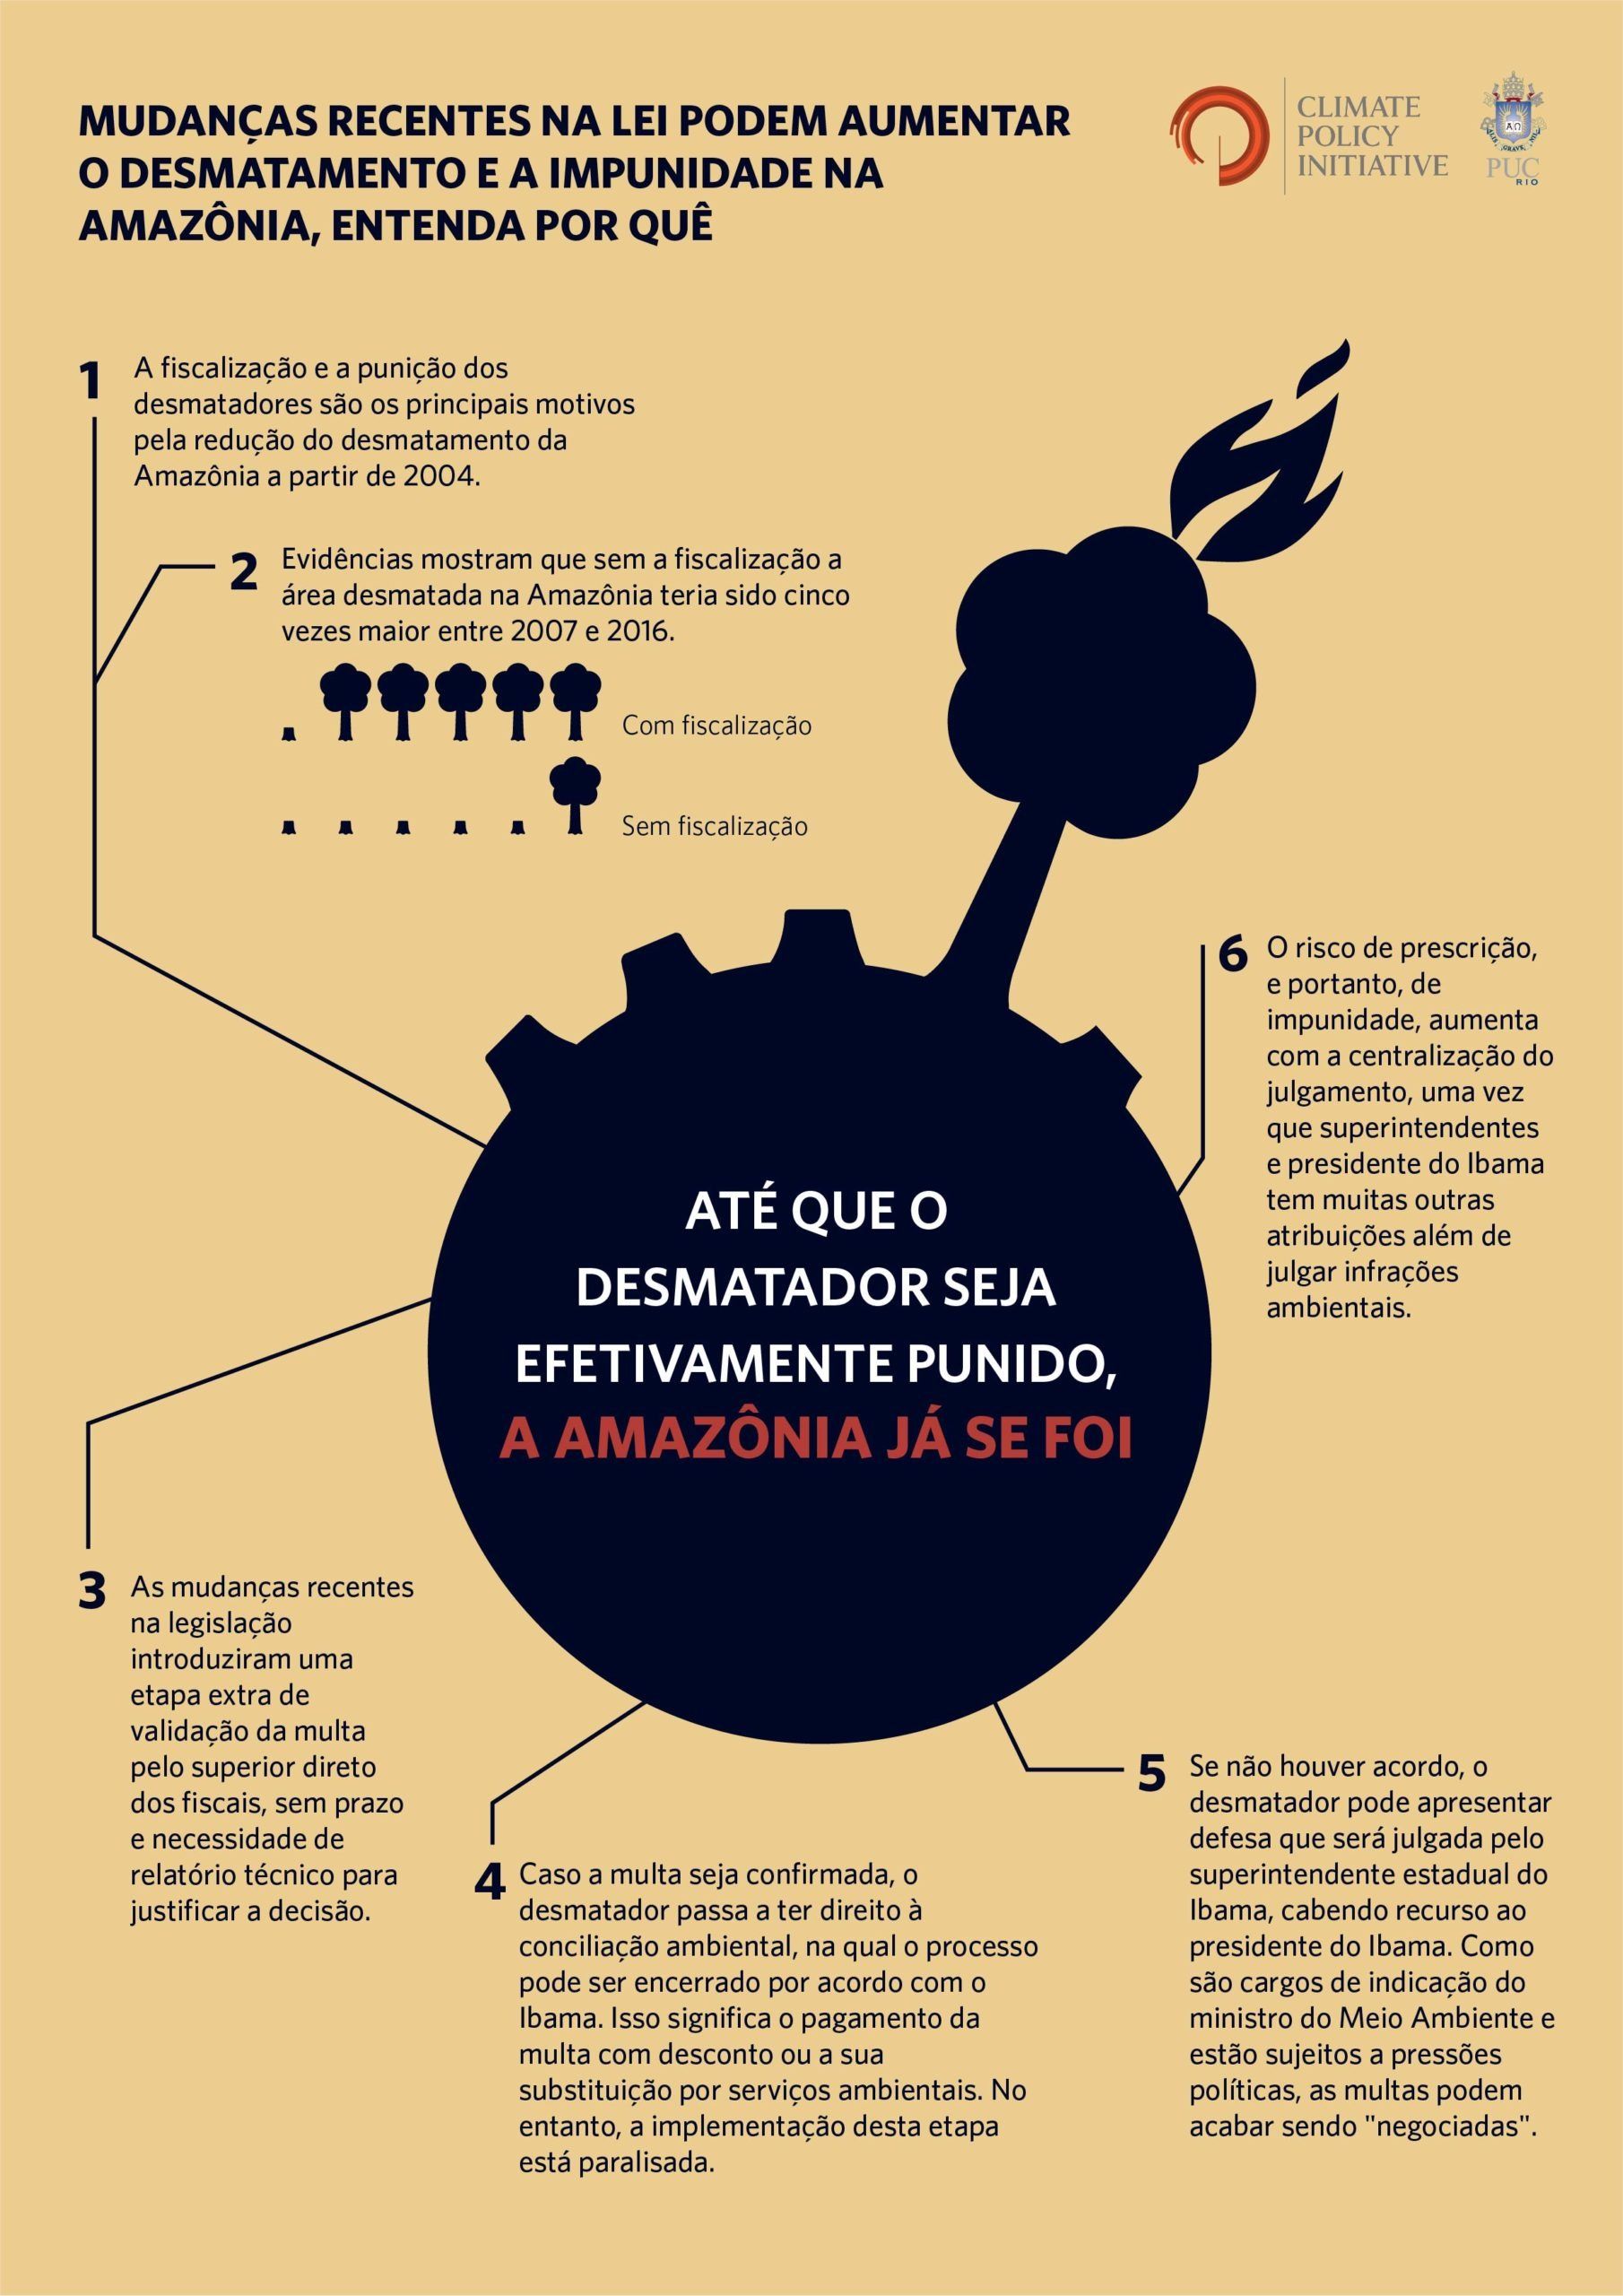 Infográfico explicando sobre como mudanças na lei podem aumentar o desmatamento e a impunidade na Amazônia